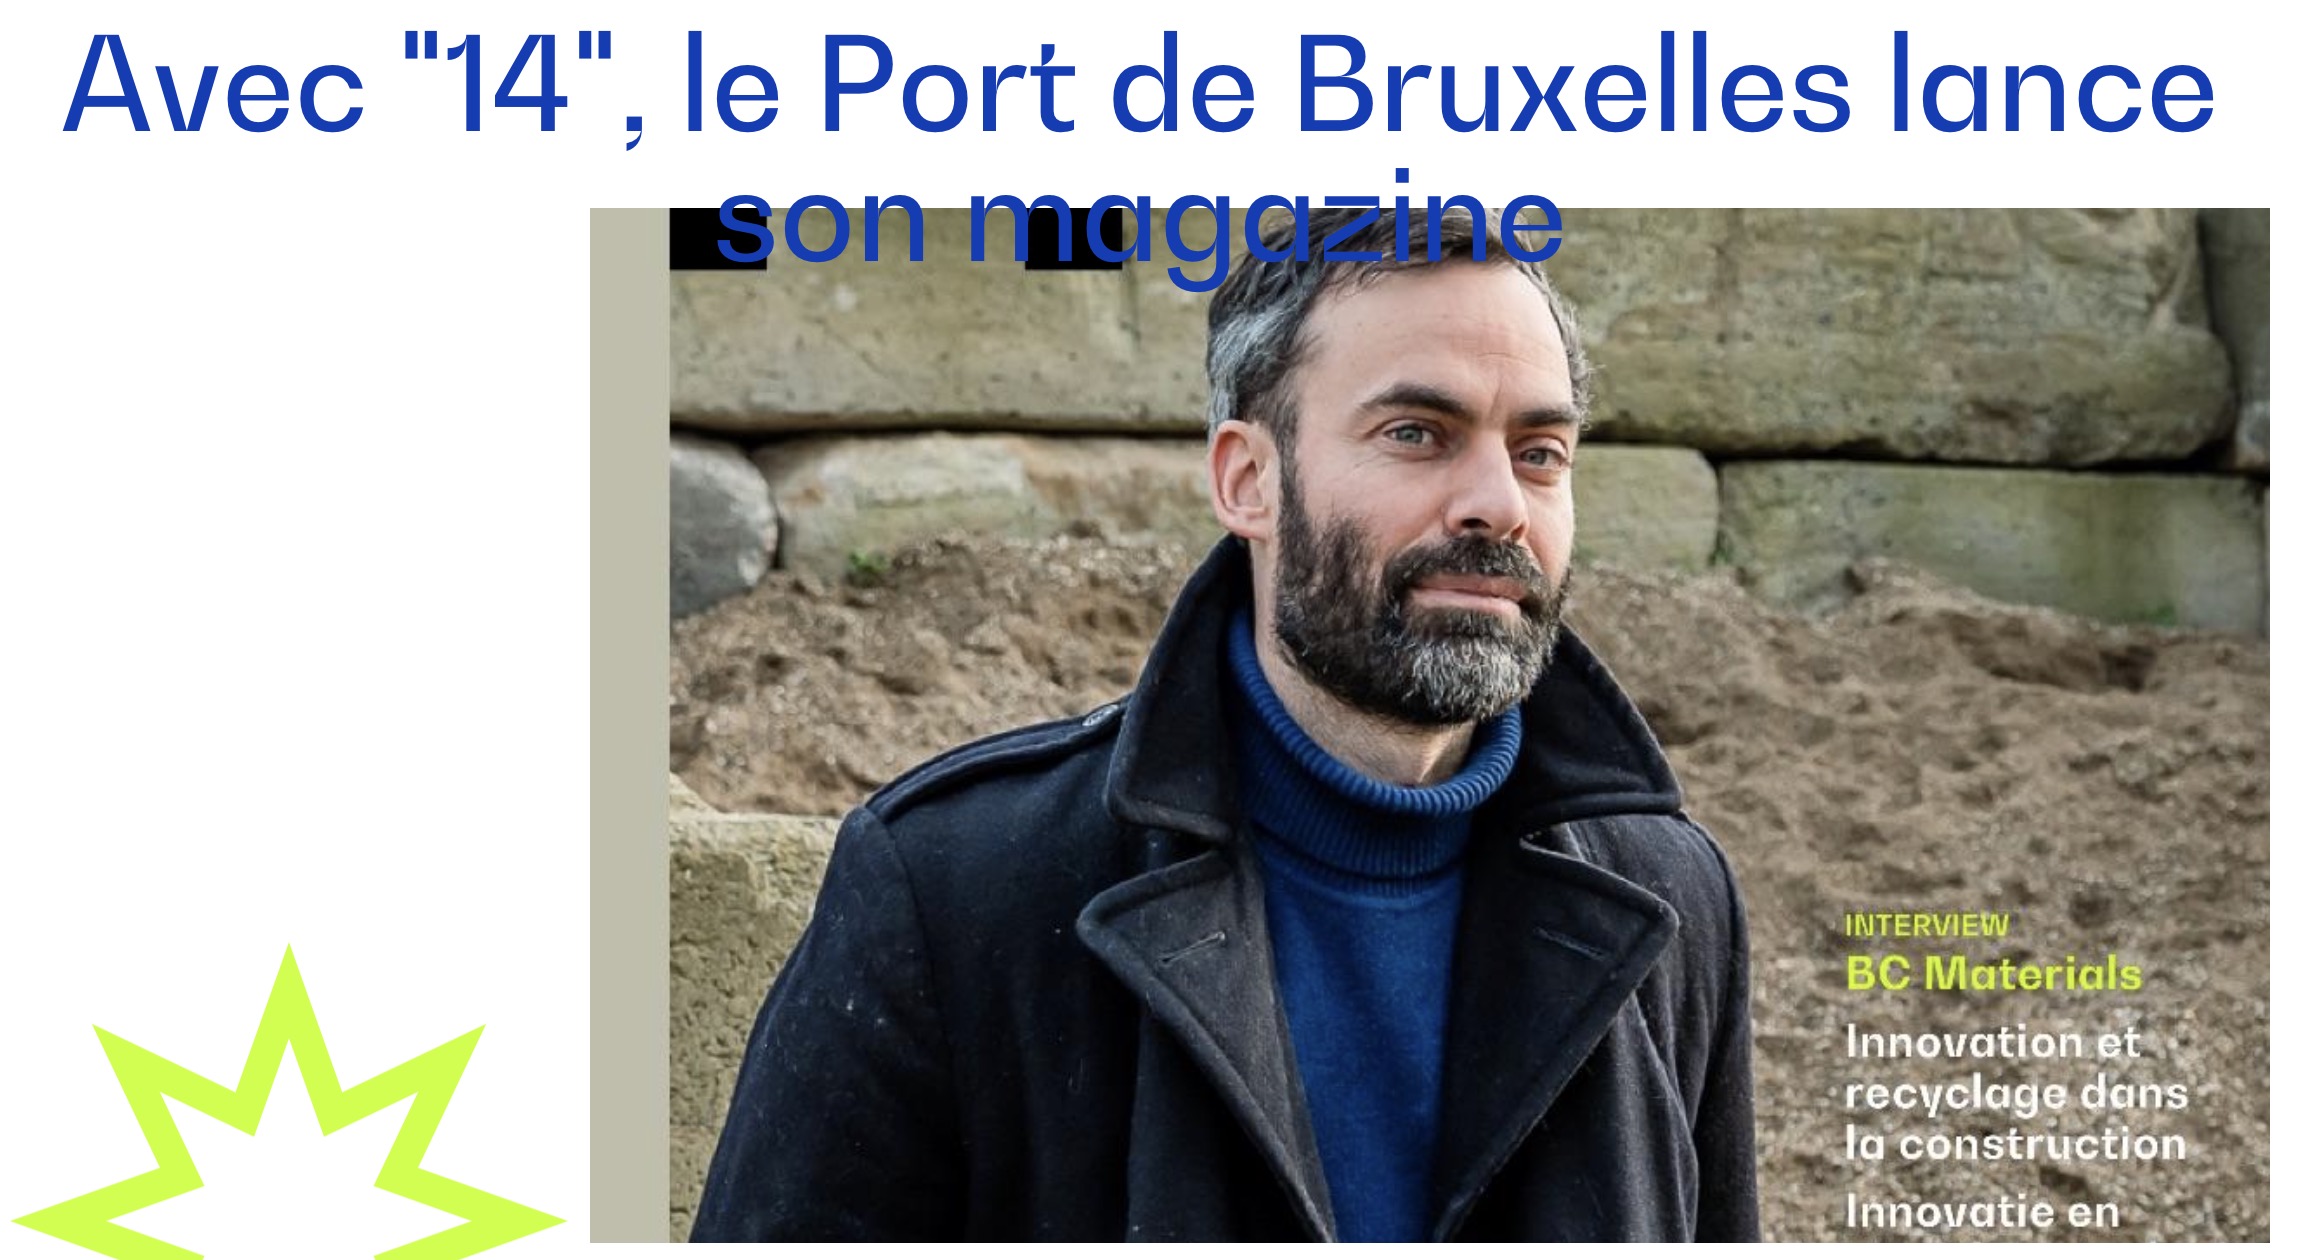 Le Port de Bruxelles lance son magazine.